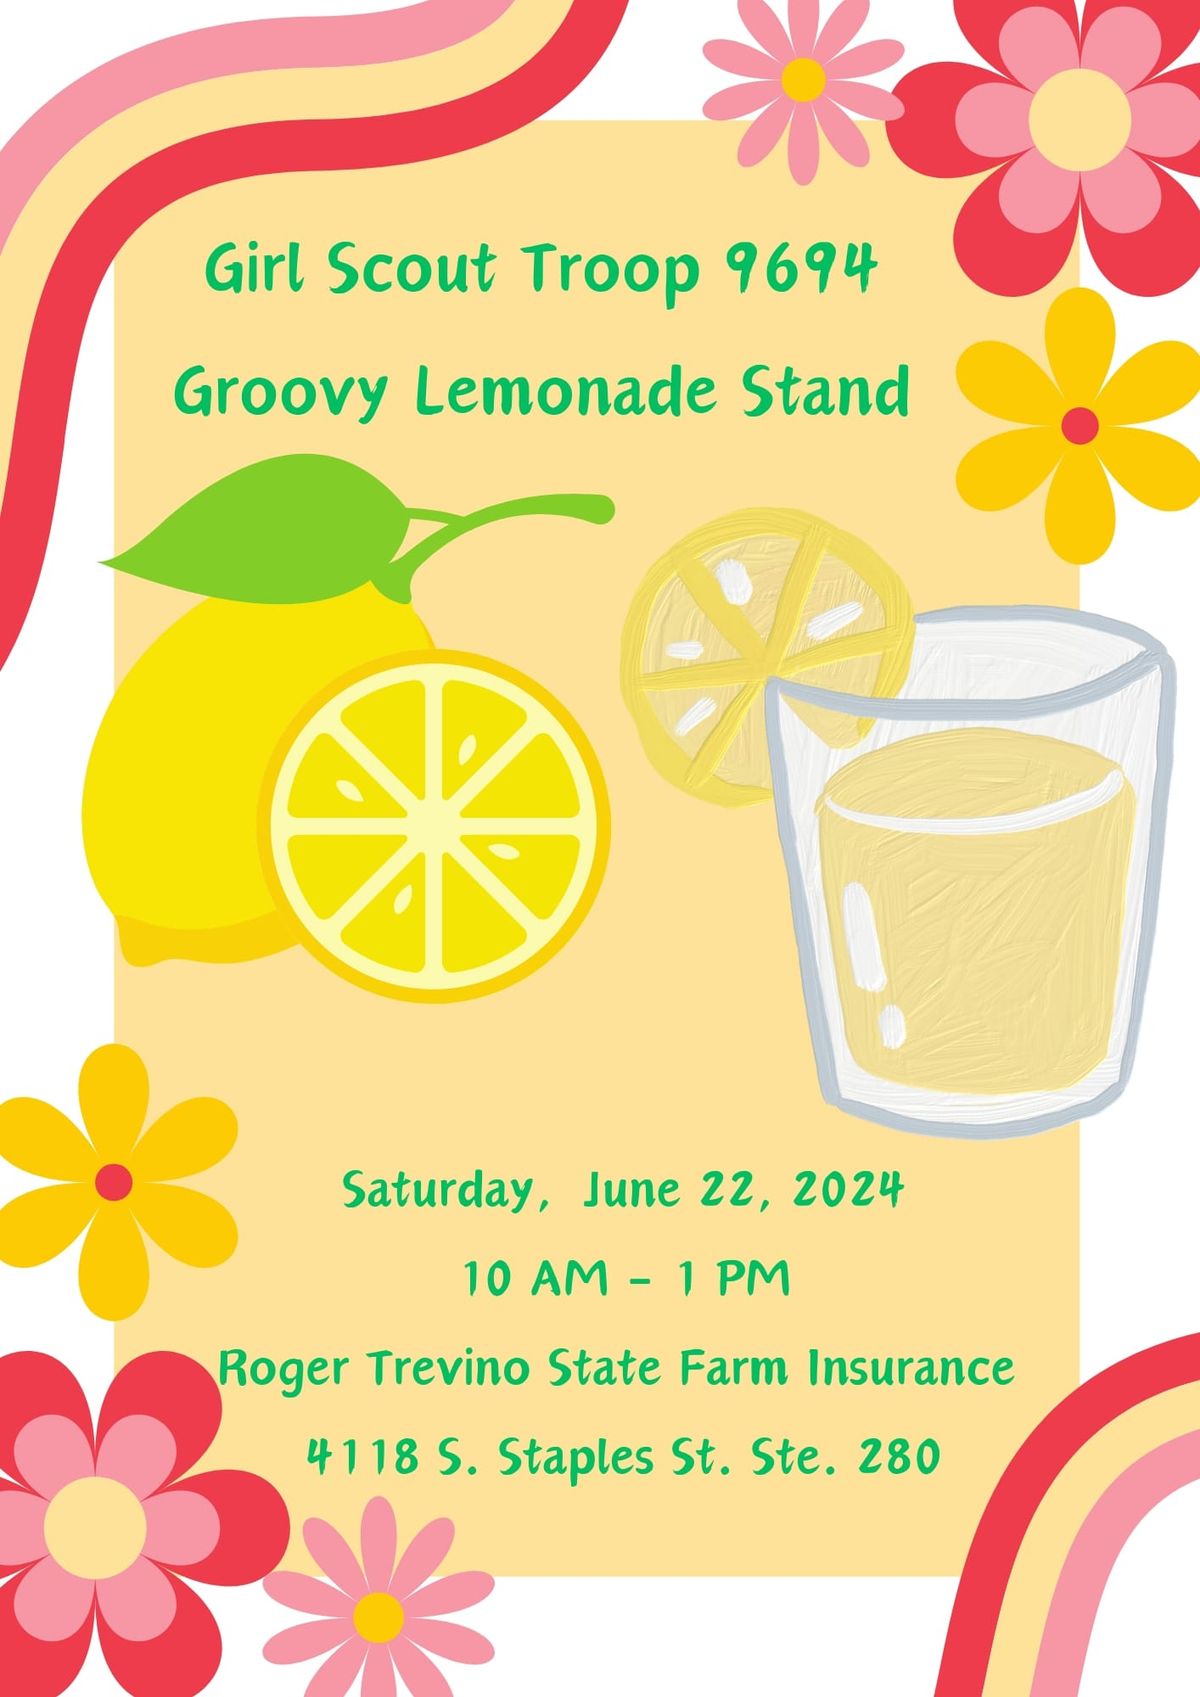 Girl Scout Troop 9694 Groovy Lemonade Stand